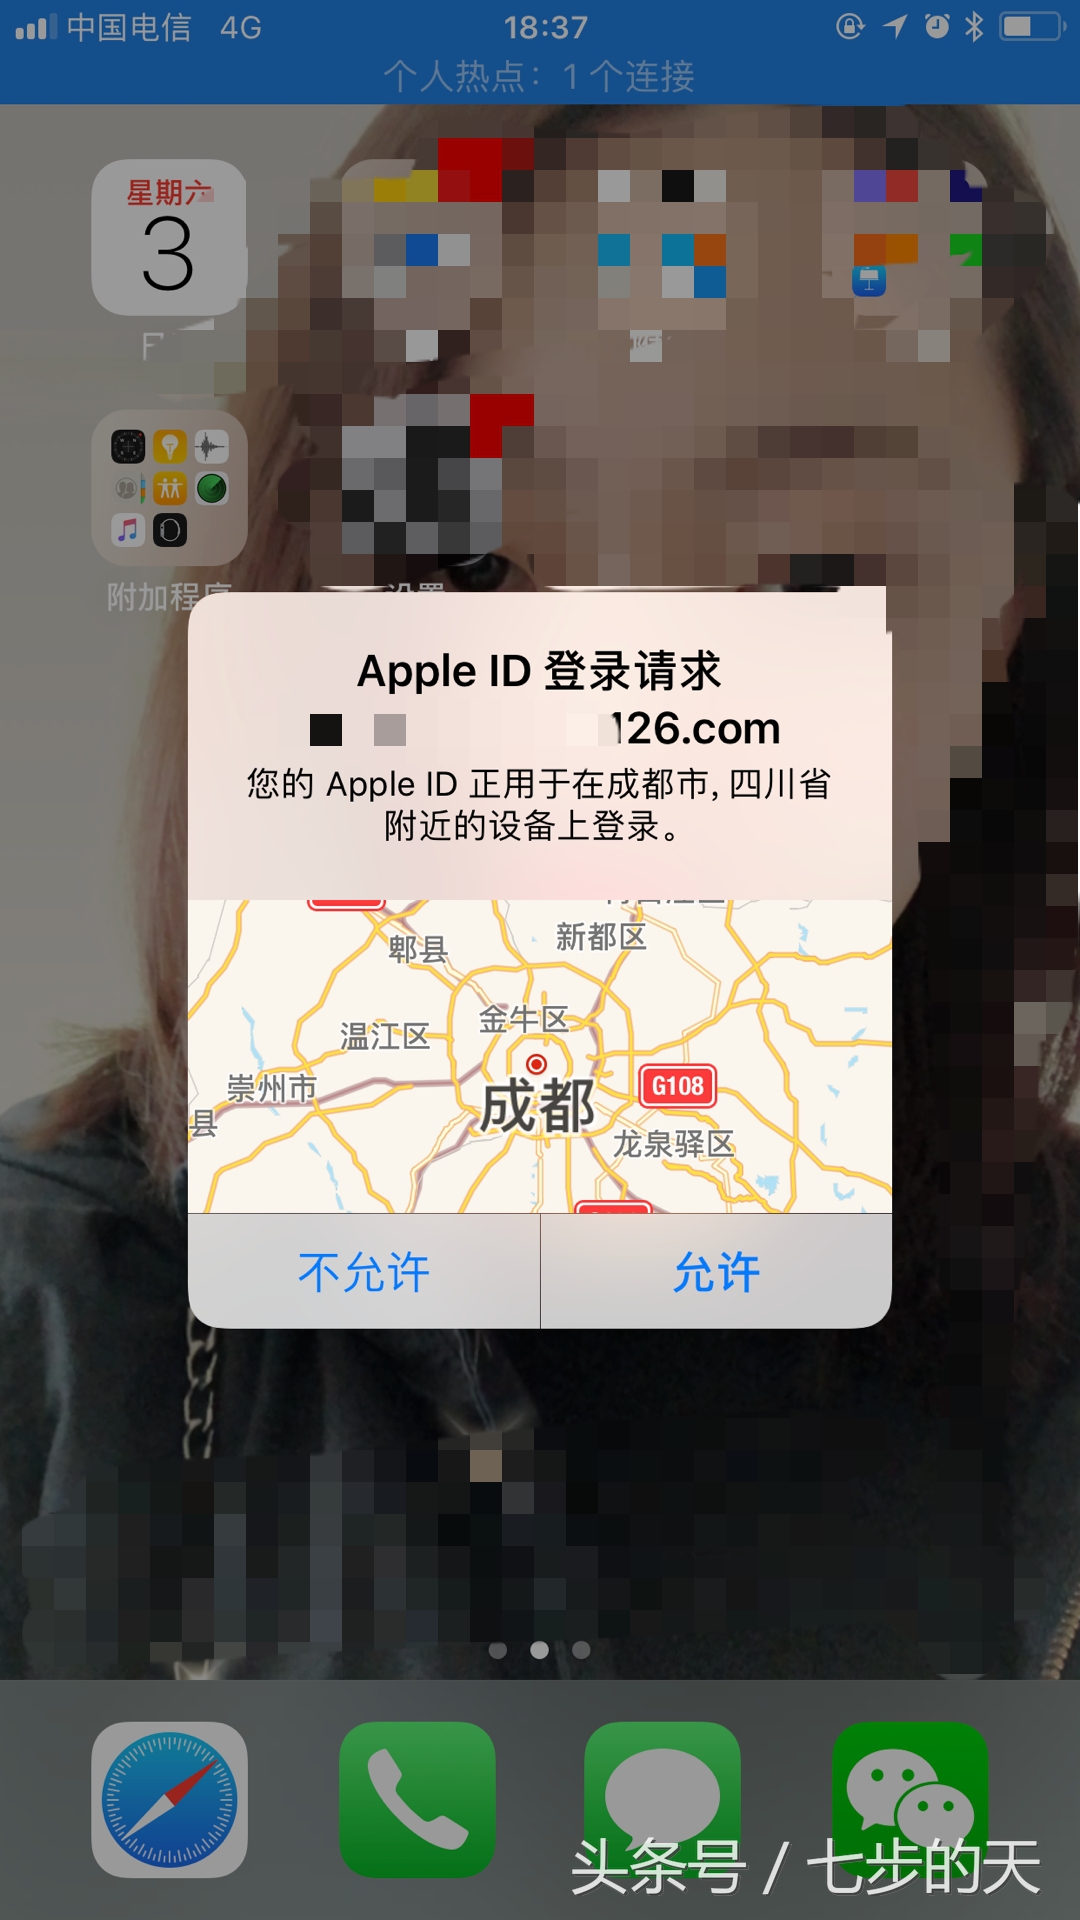 如何通过苹果账号Apple ID登录iCloud邮箱？